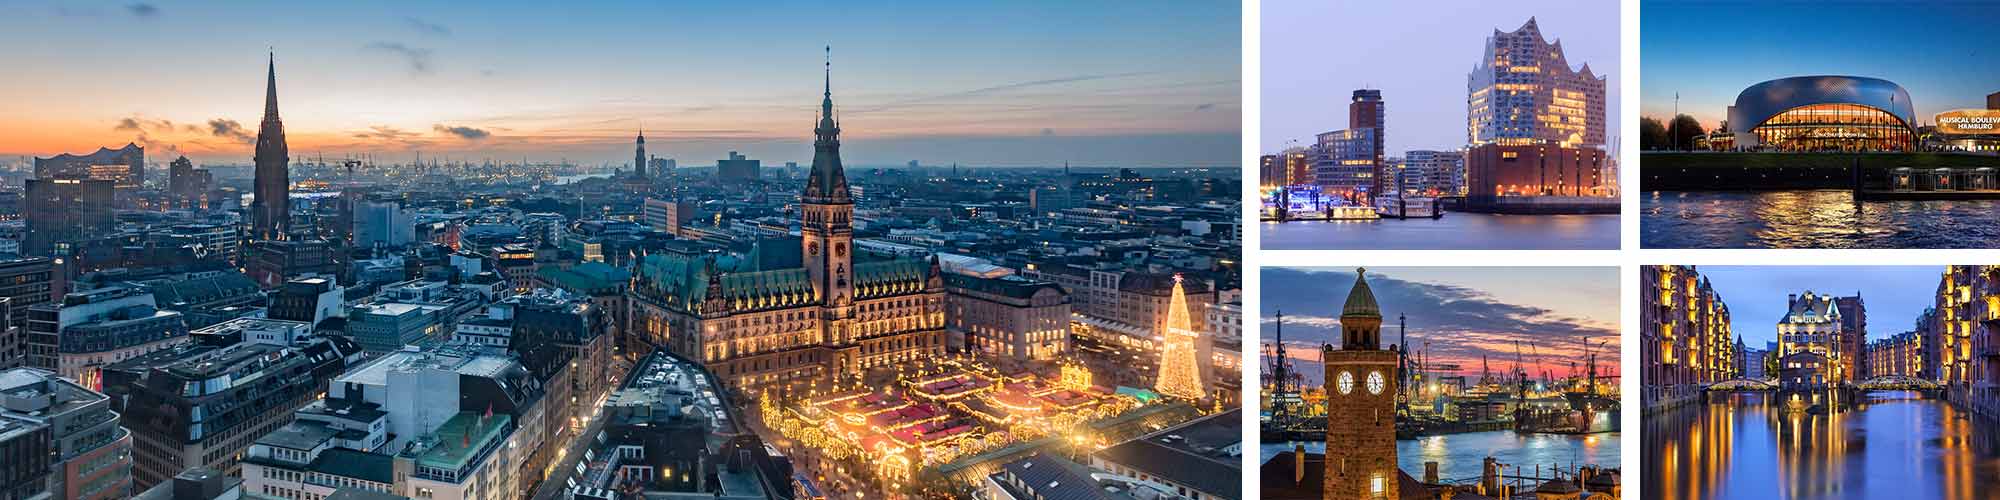 Hamburg Städtetrip - Blick auf die Hansestadt Hamburg